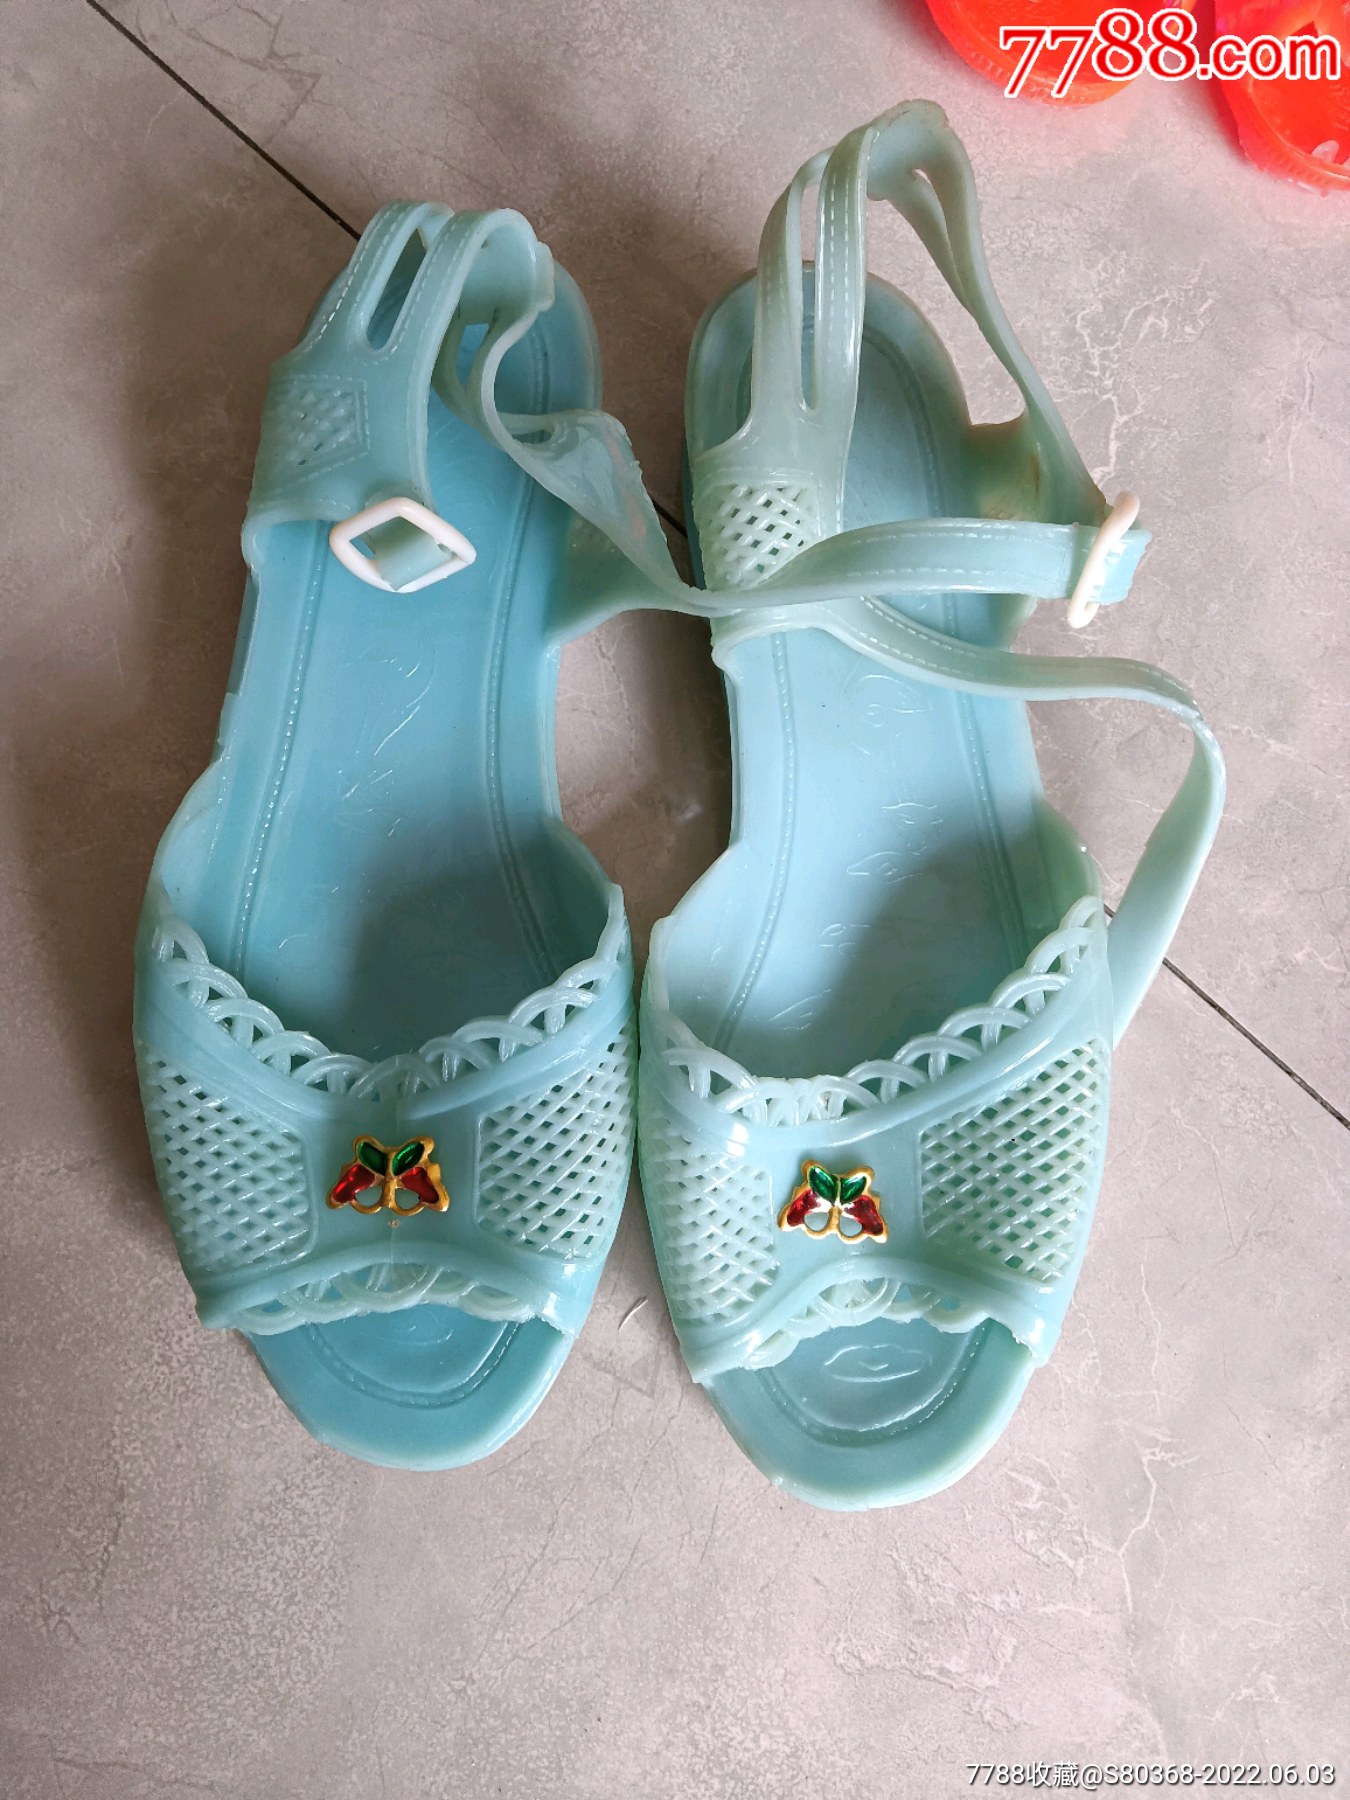 八十年代怀旧收藏品一一儿童塑料女孩凉鞋狮子式样非常少见